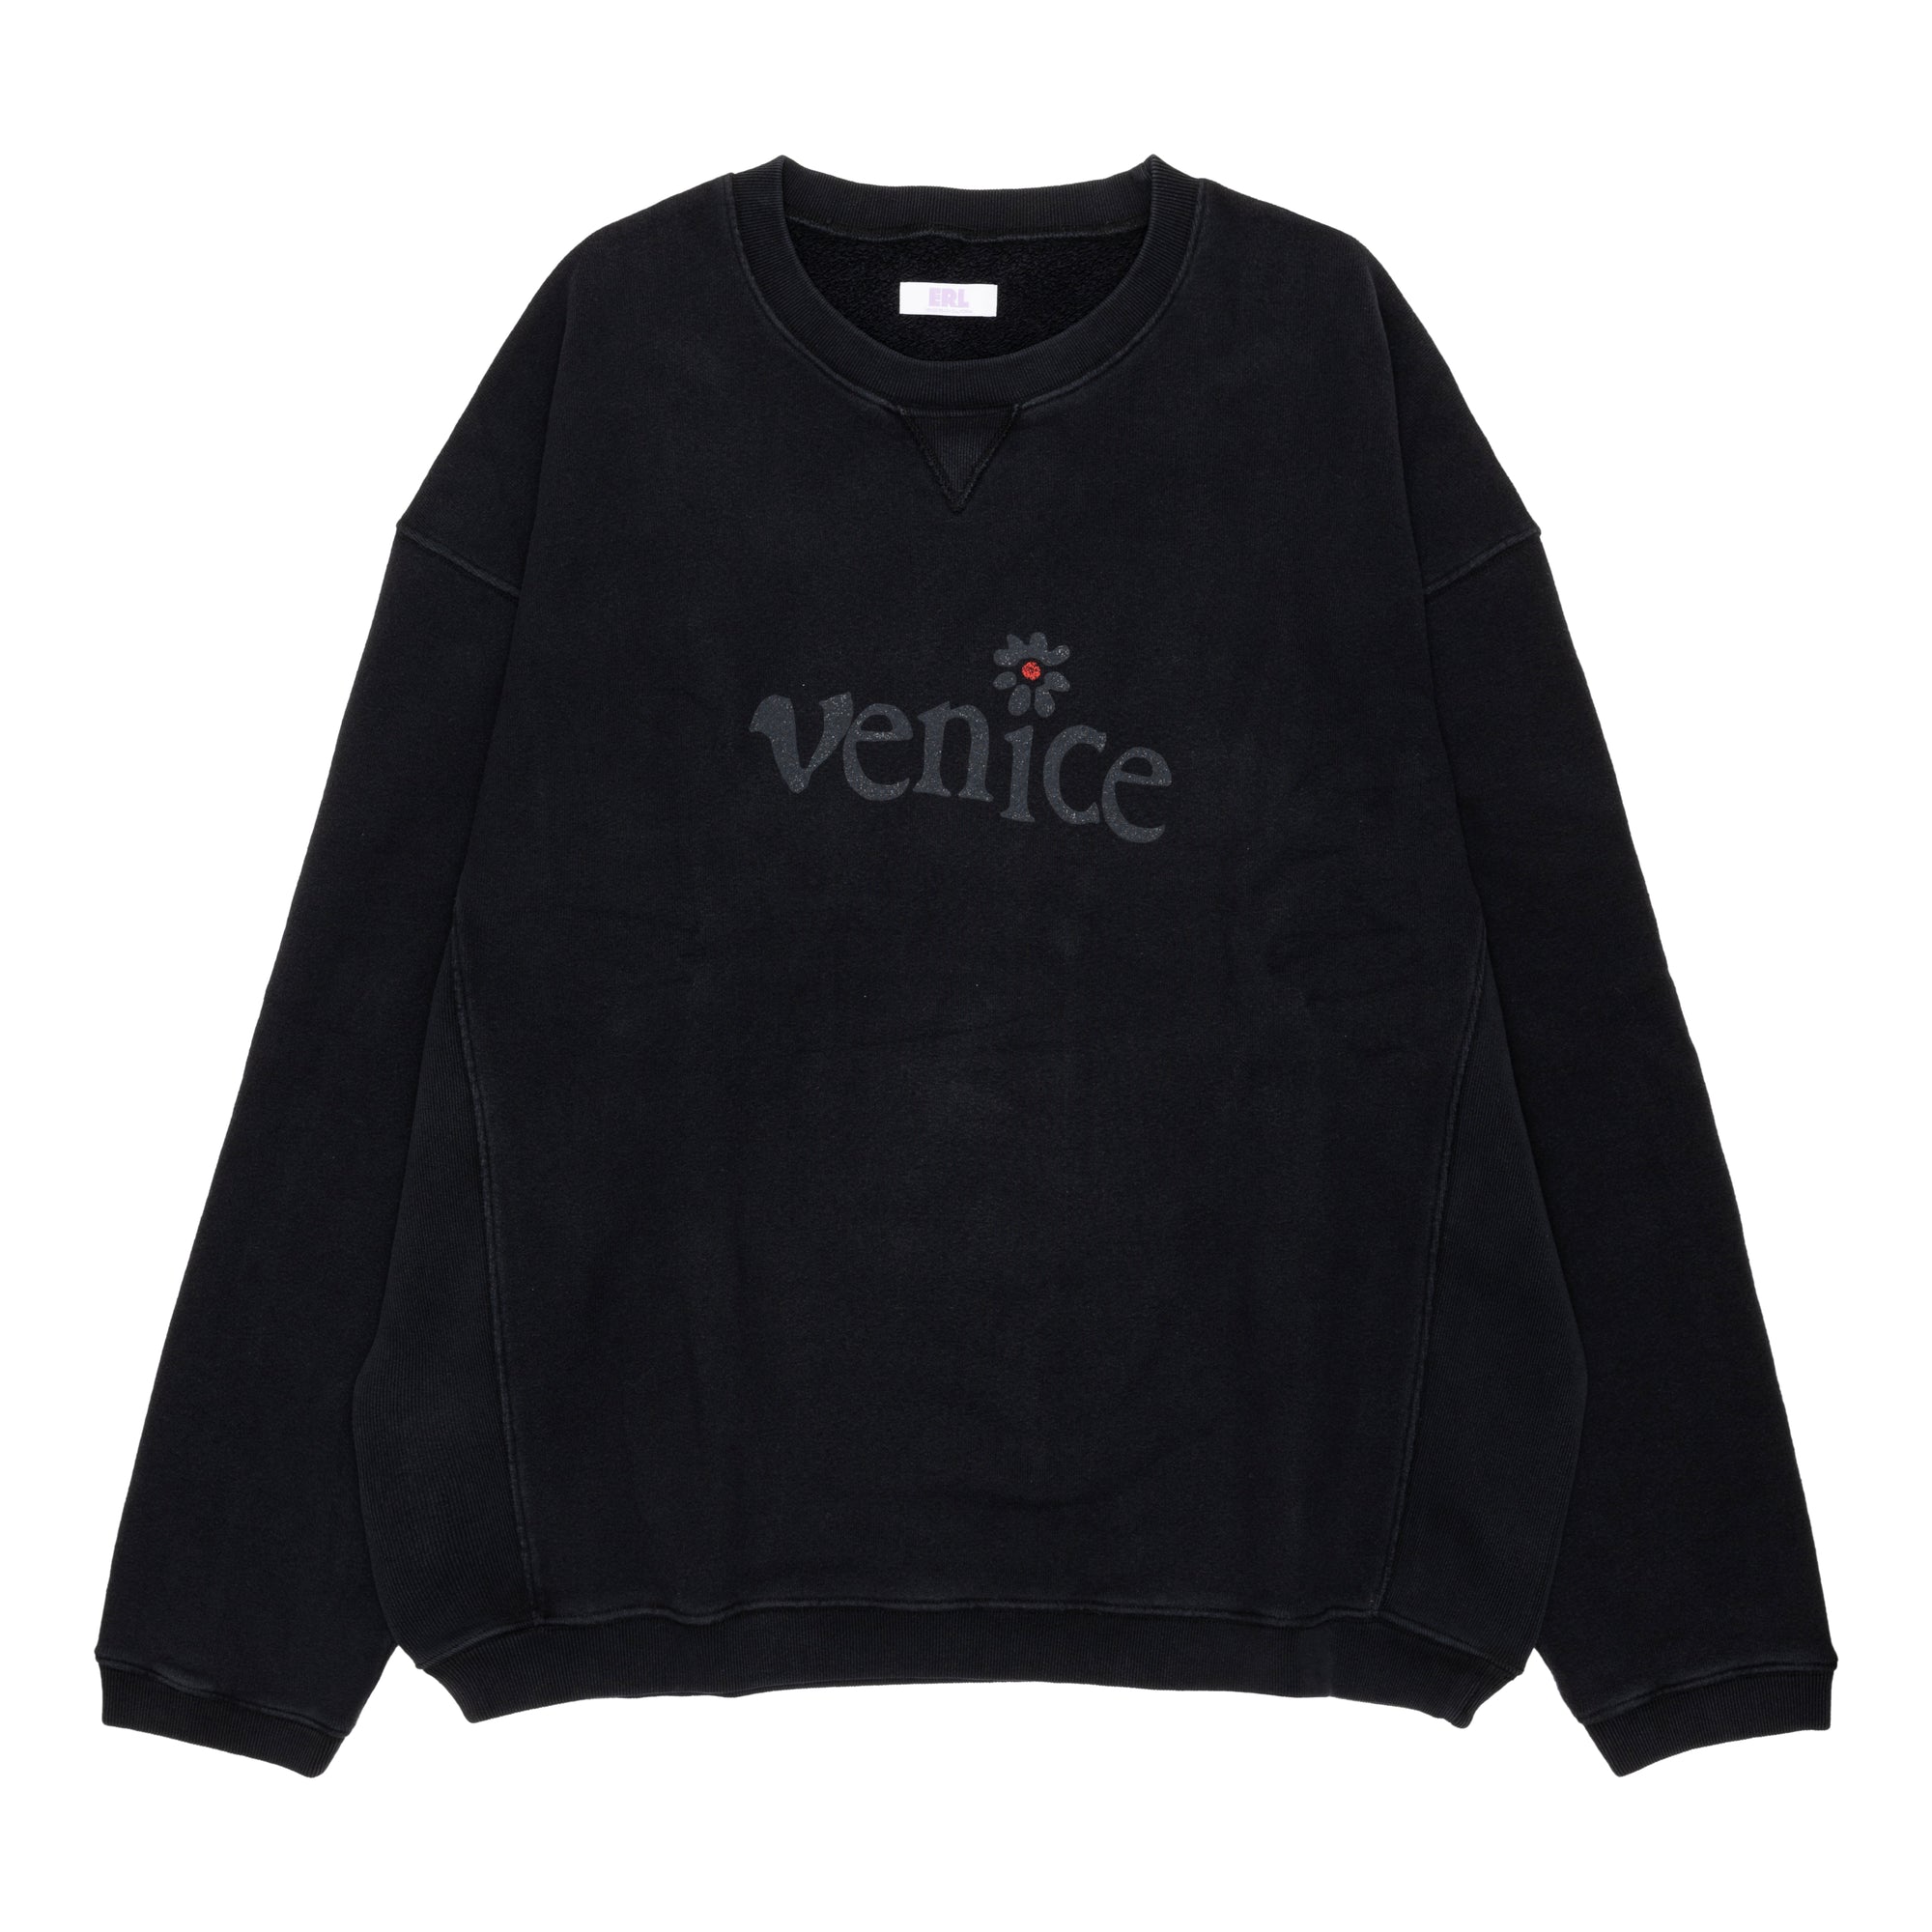 ERL - Venice Premium Fleece Crew Neck  - (Black) view 1